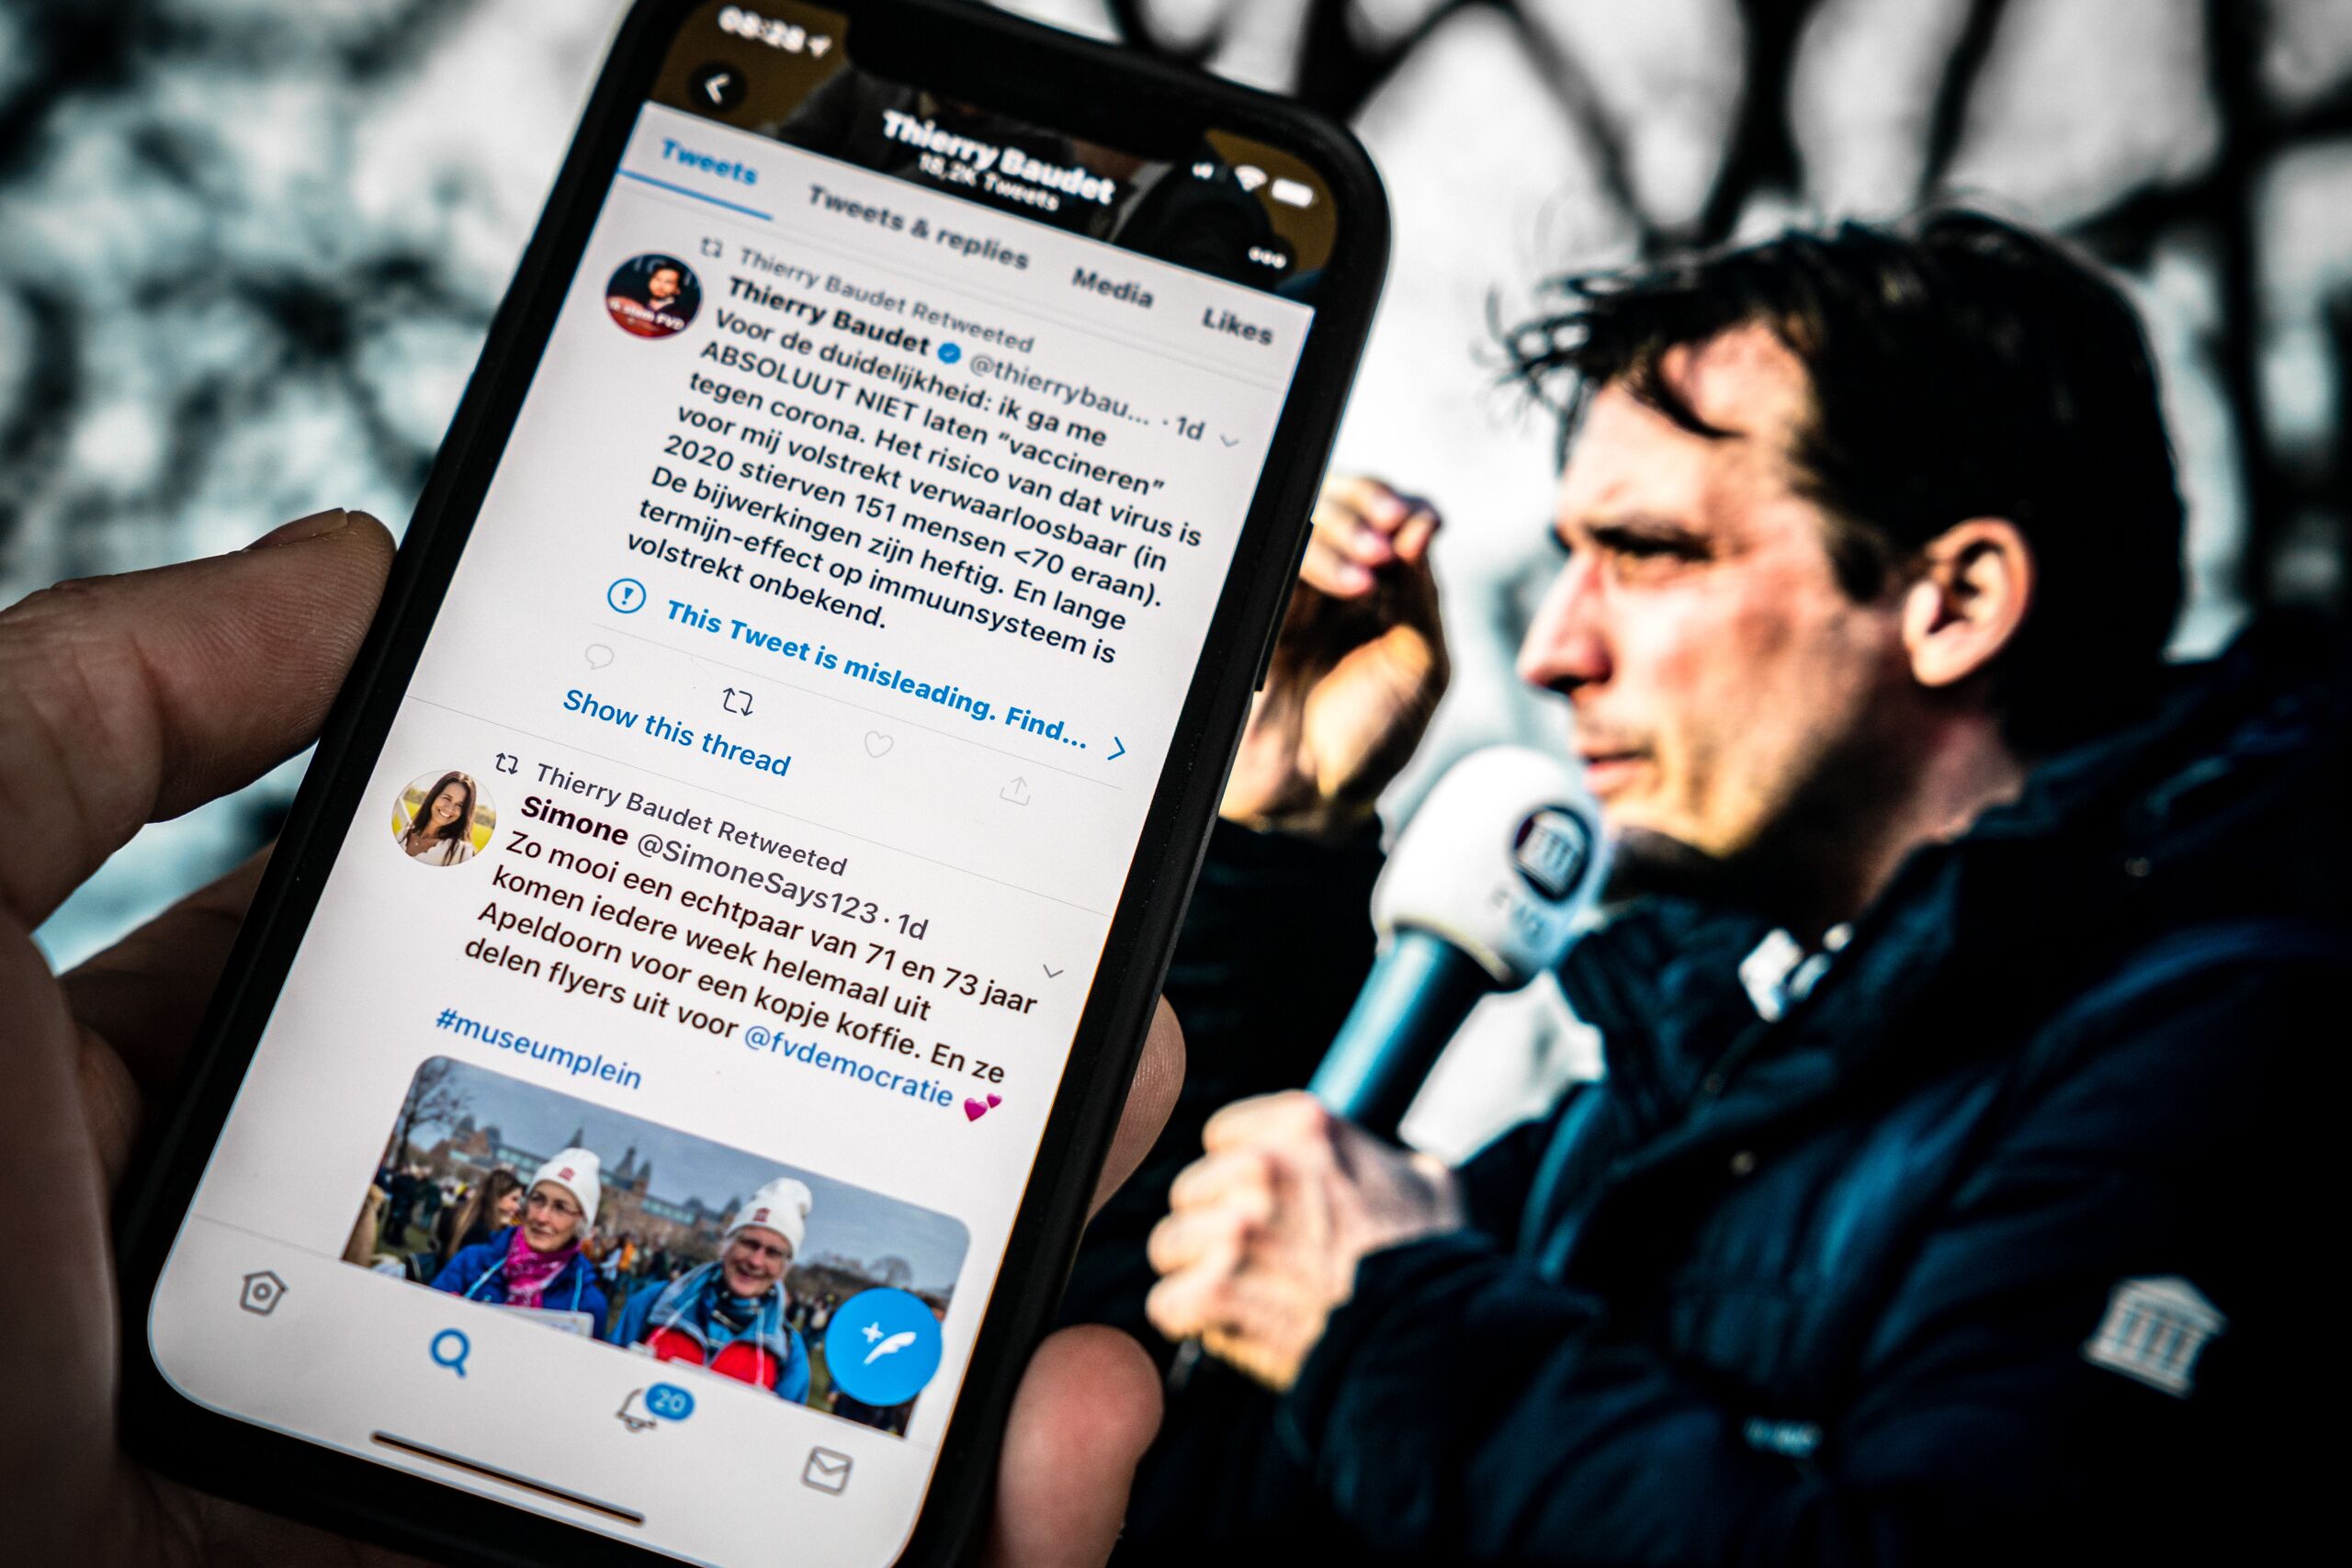 Twitter heeft een waarschuwing afgegeven bij een tweet van  Thierry Baudet. De leider van Forum voor Democratie doet een uitspraak over vaccinatie tegen het coronavirus dat volgens het social media platform in twijfel getrokken moet worden. 